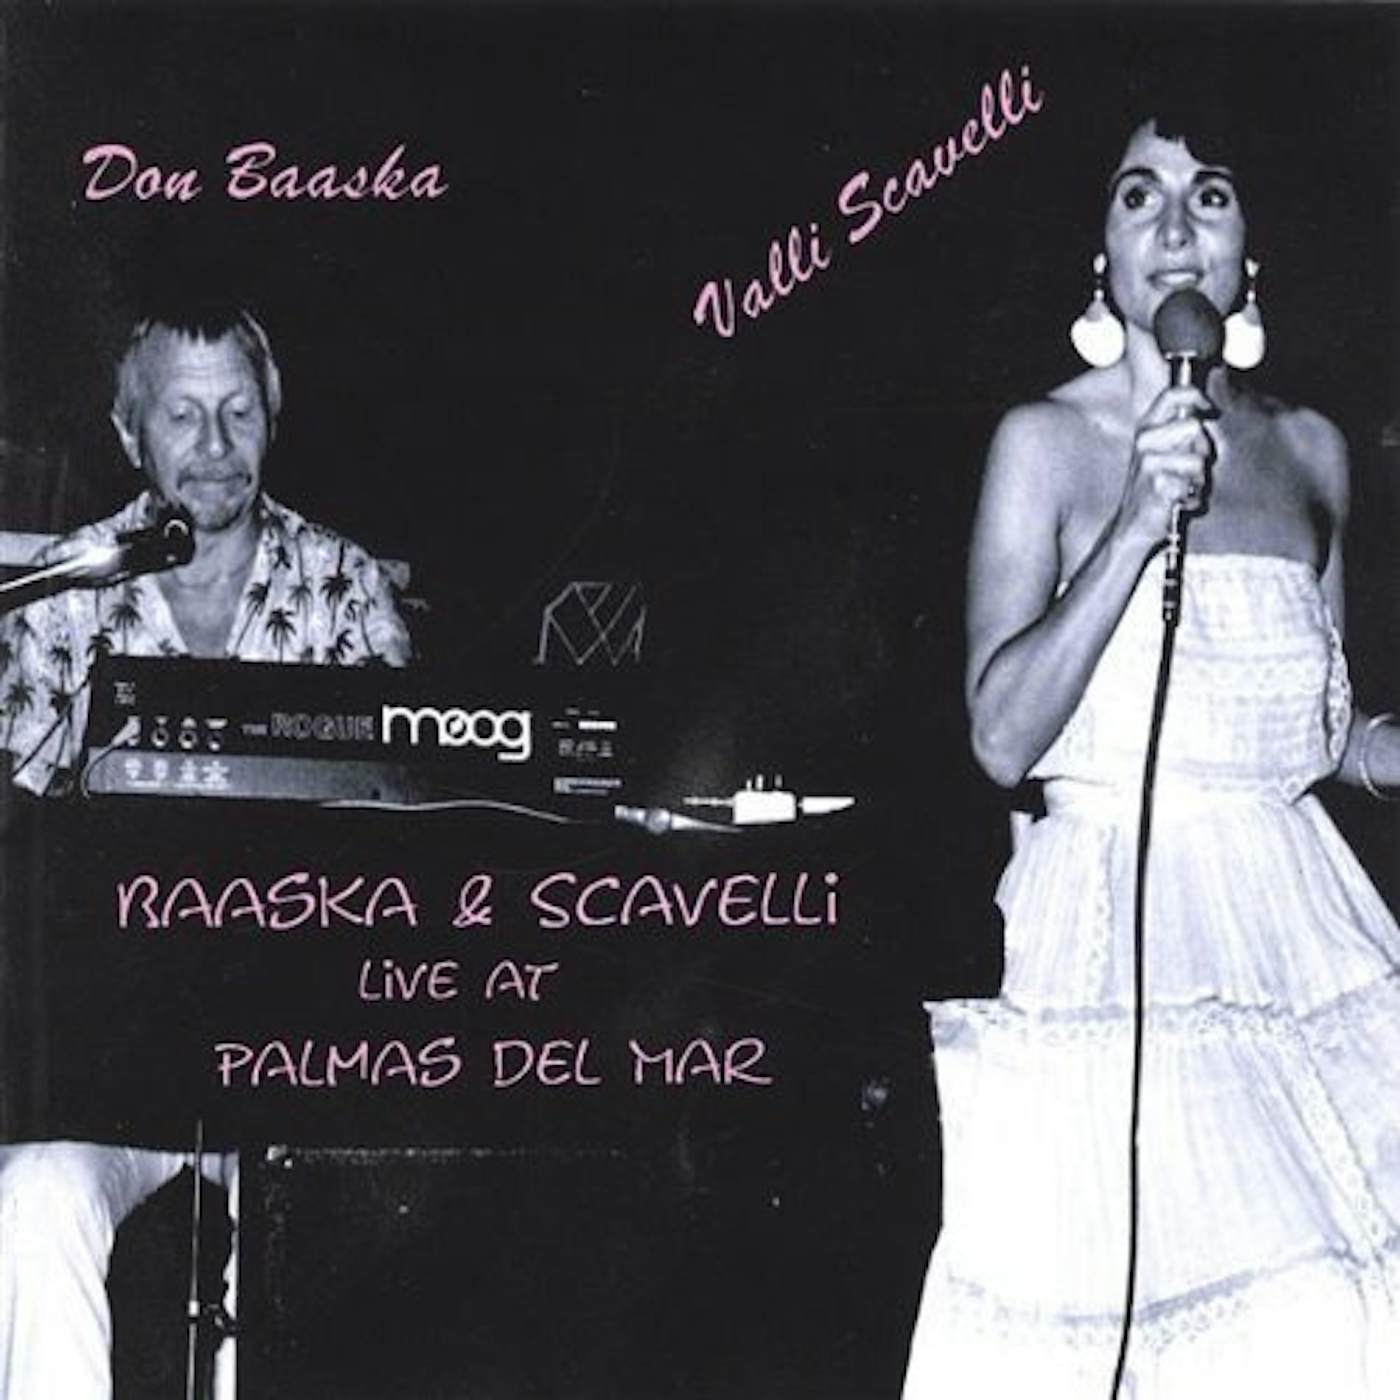 BAASKA & SCAVELLI LIVE AT PALMAS CD